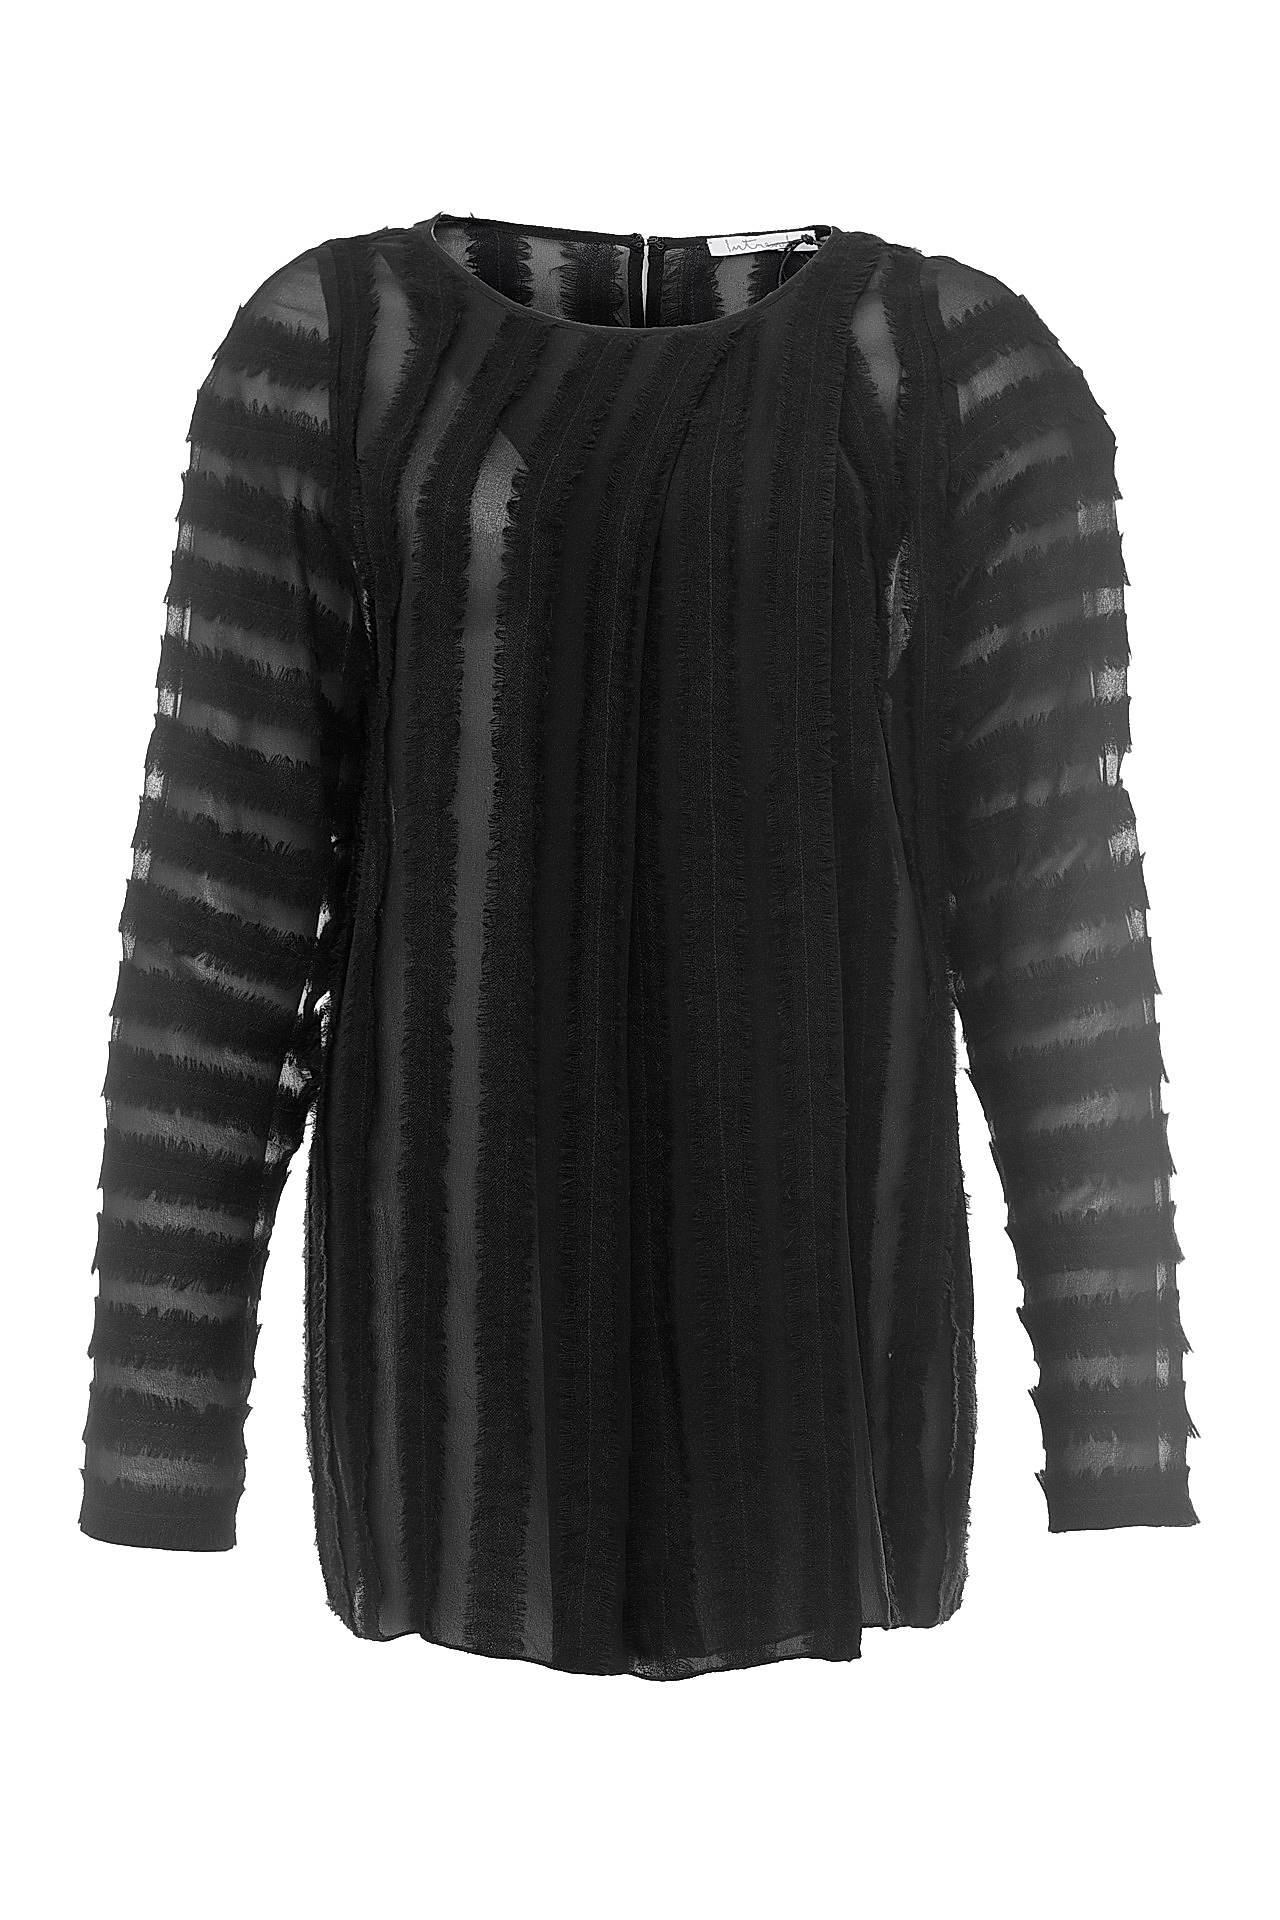 Одежда женская Блузка INTREND (17092A/16.2 ). Купить за 9950 руб.